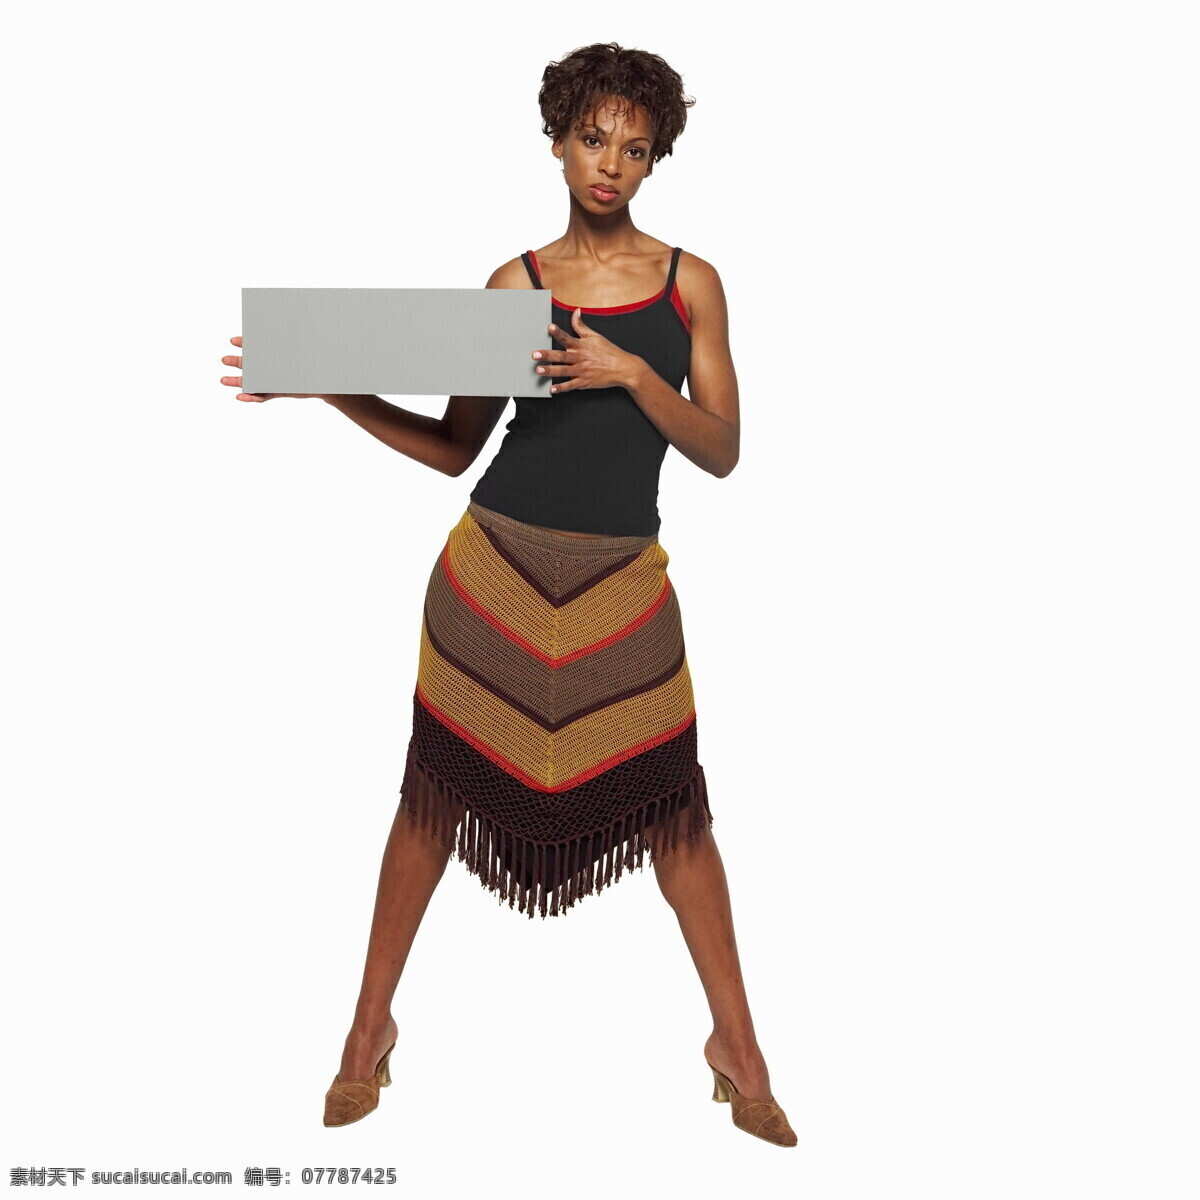 手 牌子 黑人 女性 女人 妇女 外国美女 欧洲 欧美 非洲 黑人美女 模特 广告牌 手拿 白色牌 空白 空白广告牌 人物图库 高清图片 生活人物 人物图片